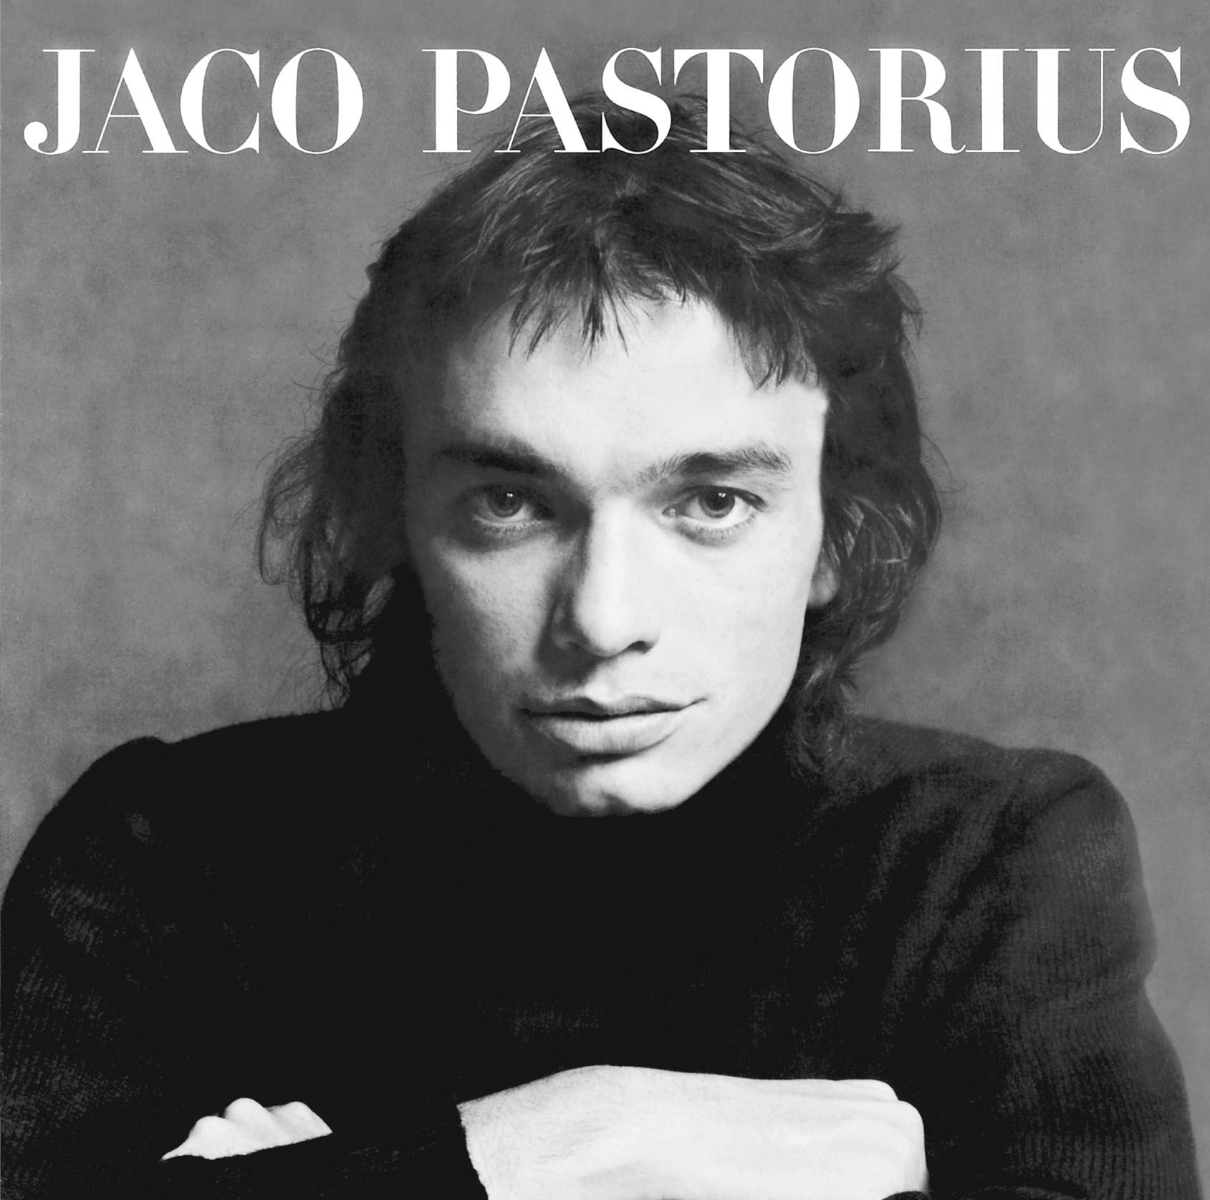 ジャコ・パストリアスの肖像+2 / Jaco Pastorius